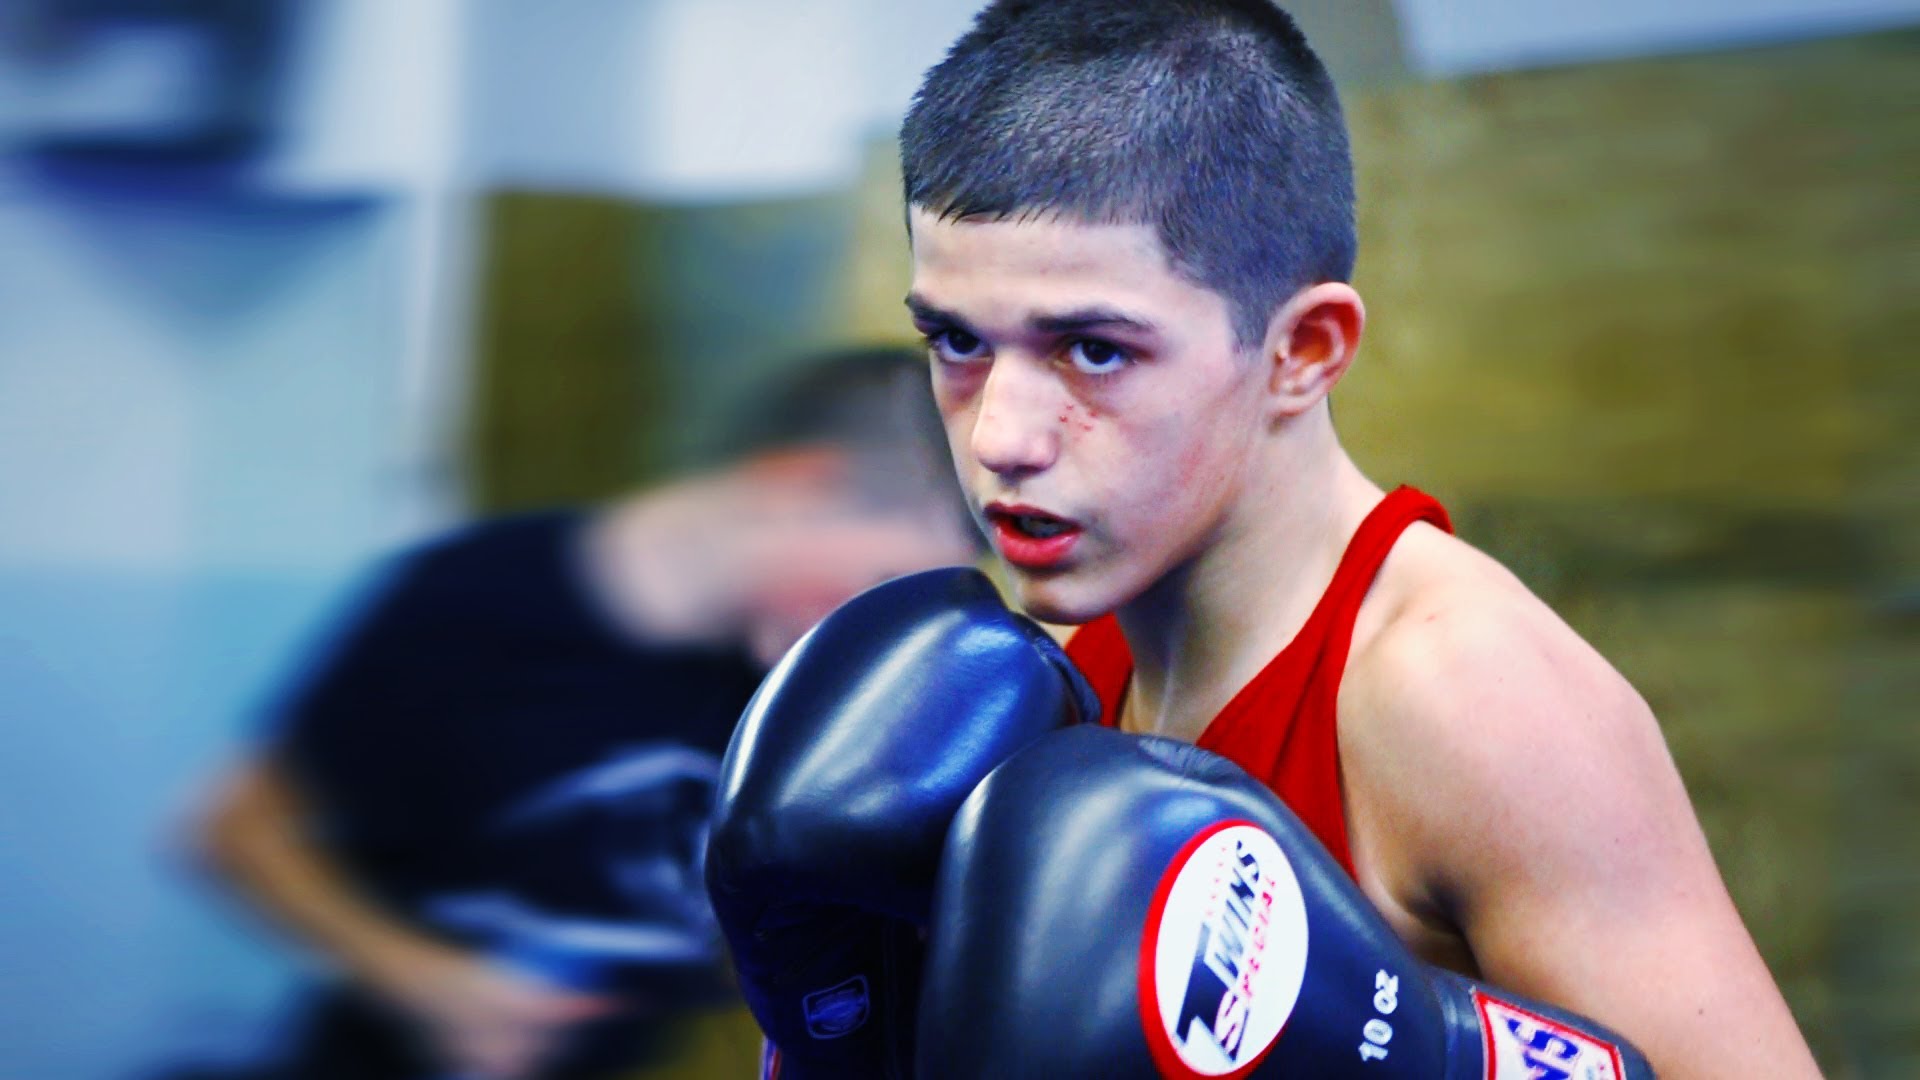 Amazing 13-Year-Old Boxing & MMA Prodigy